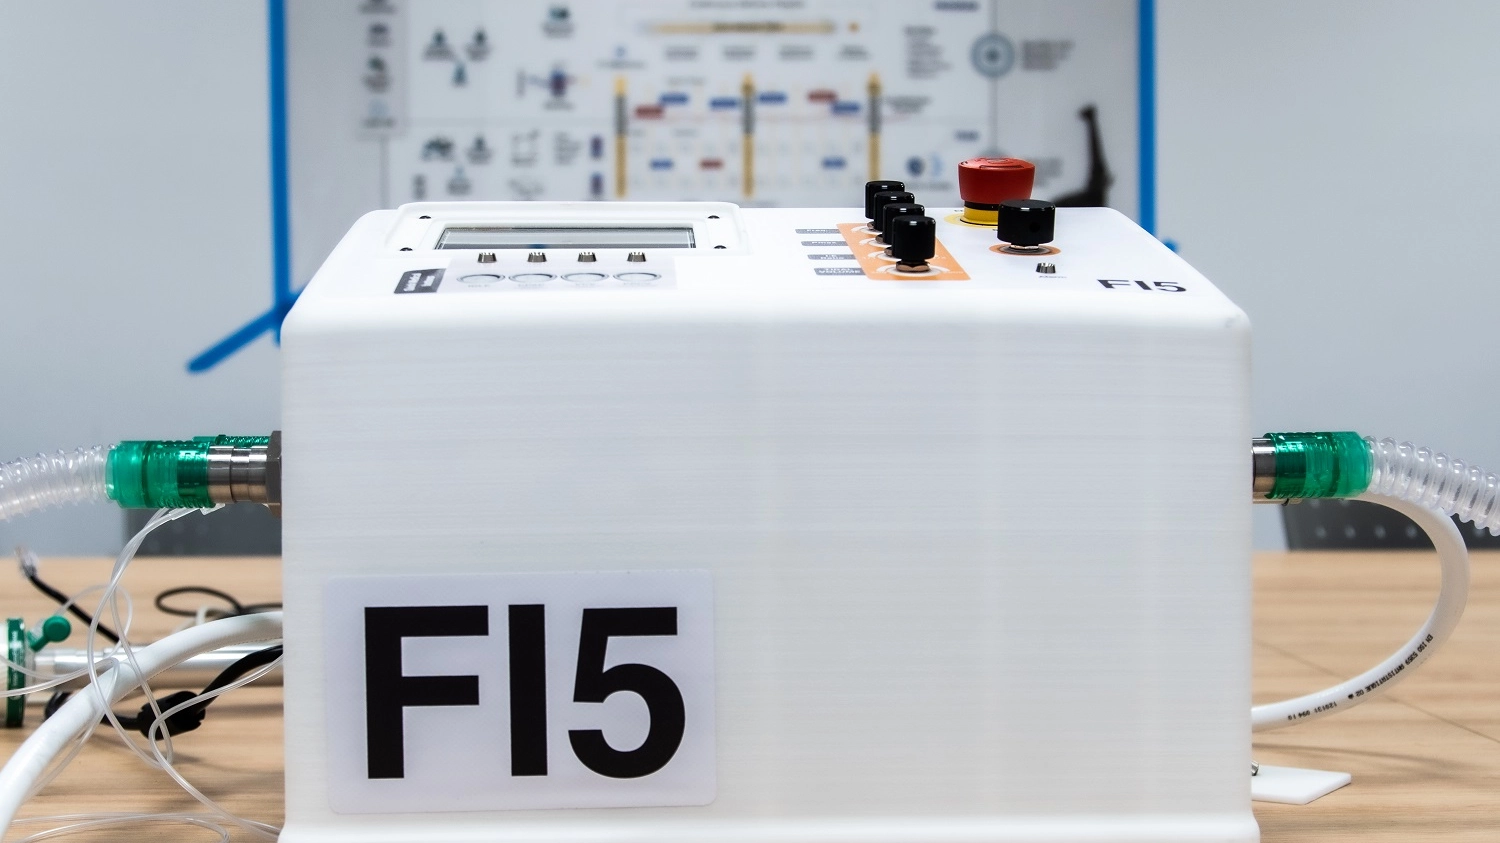 Il ventilatore polmonare FI5 realizzato dalla Ferrari